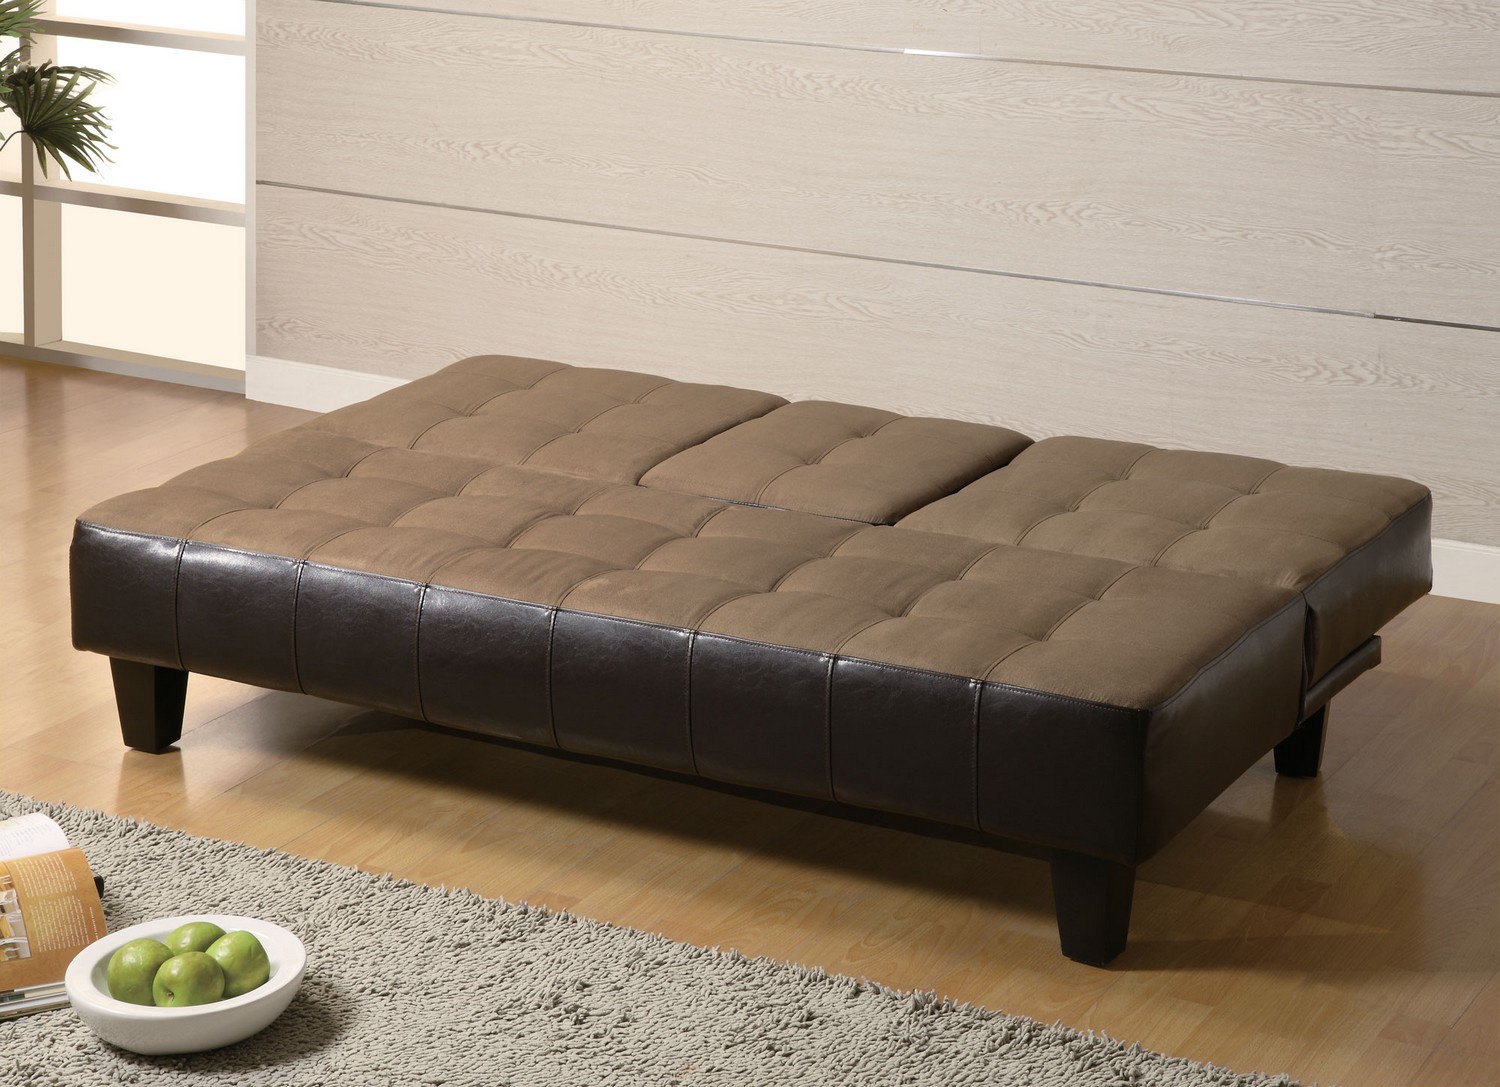 Coaster 300237 Sofa Bed - Tan/dark Brown